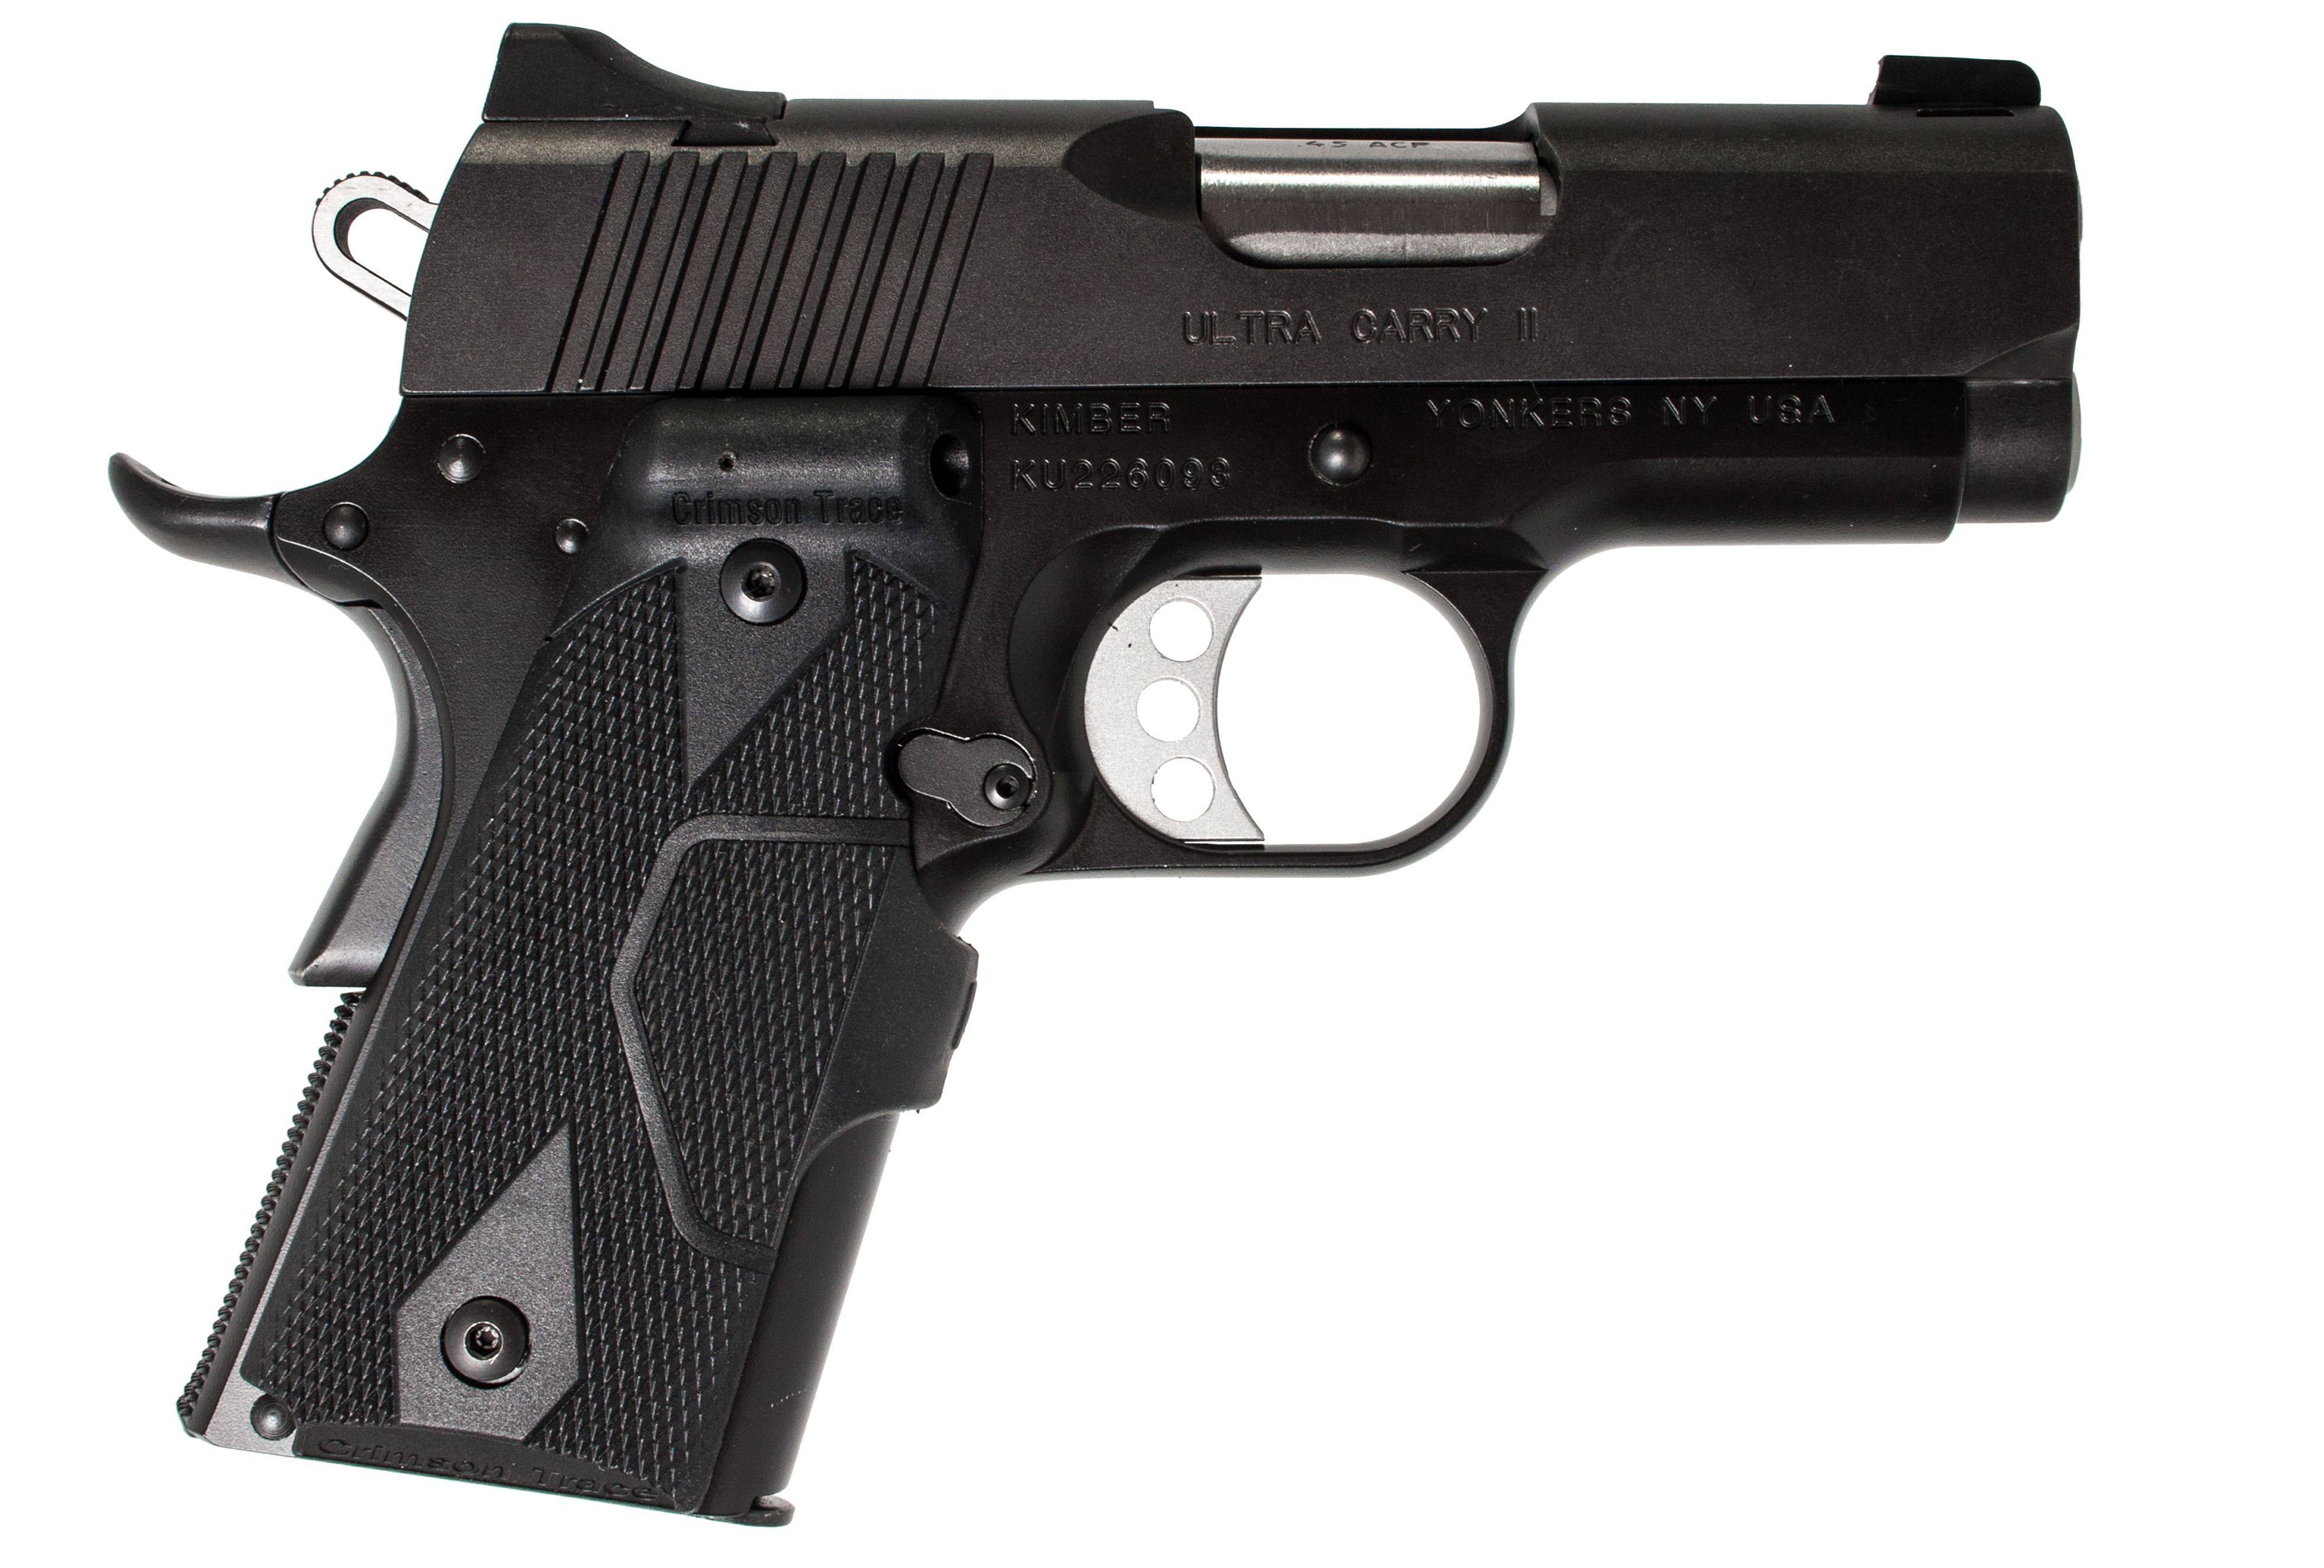 Kimber compact cdp ii пистолет — характеристики, фото, ттх